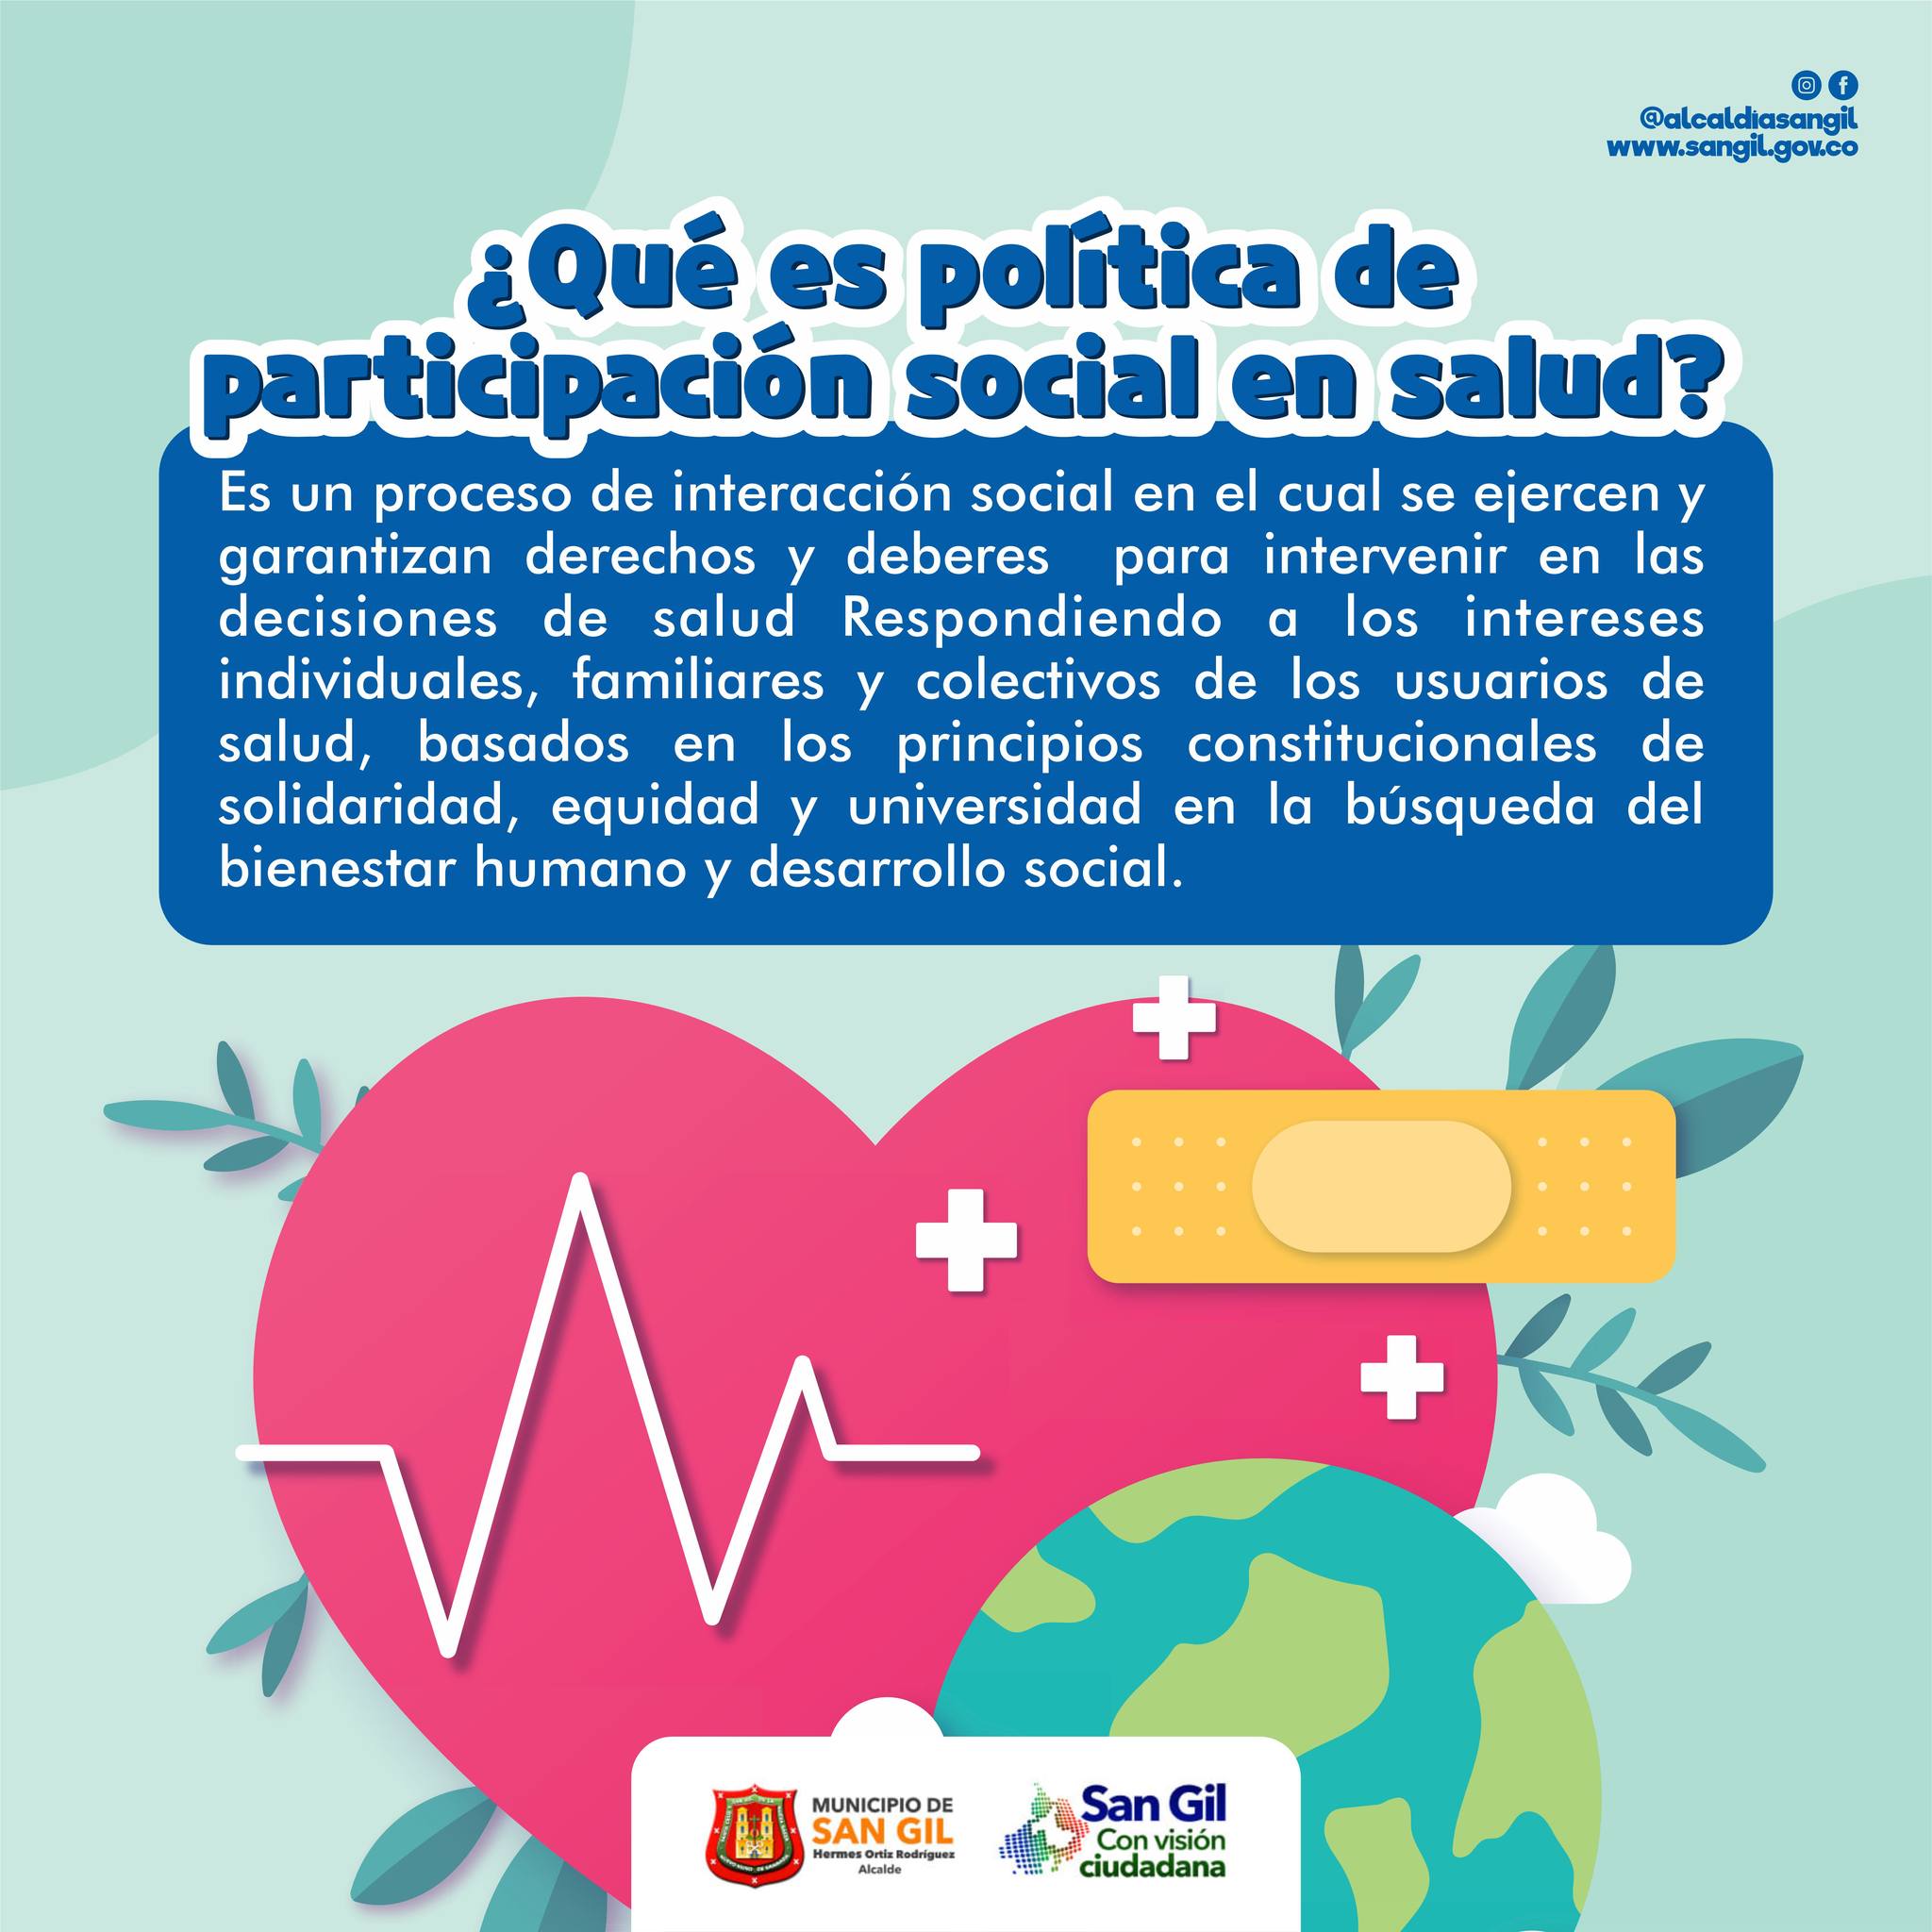 Qué es la política de participación social en salud